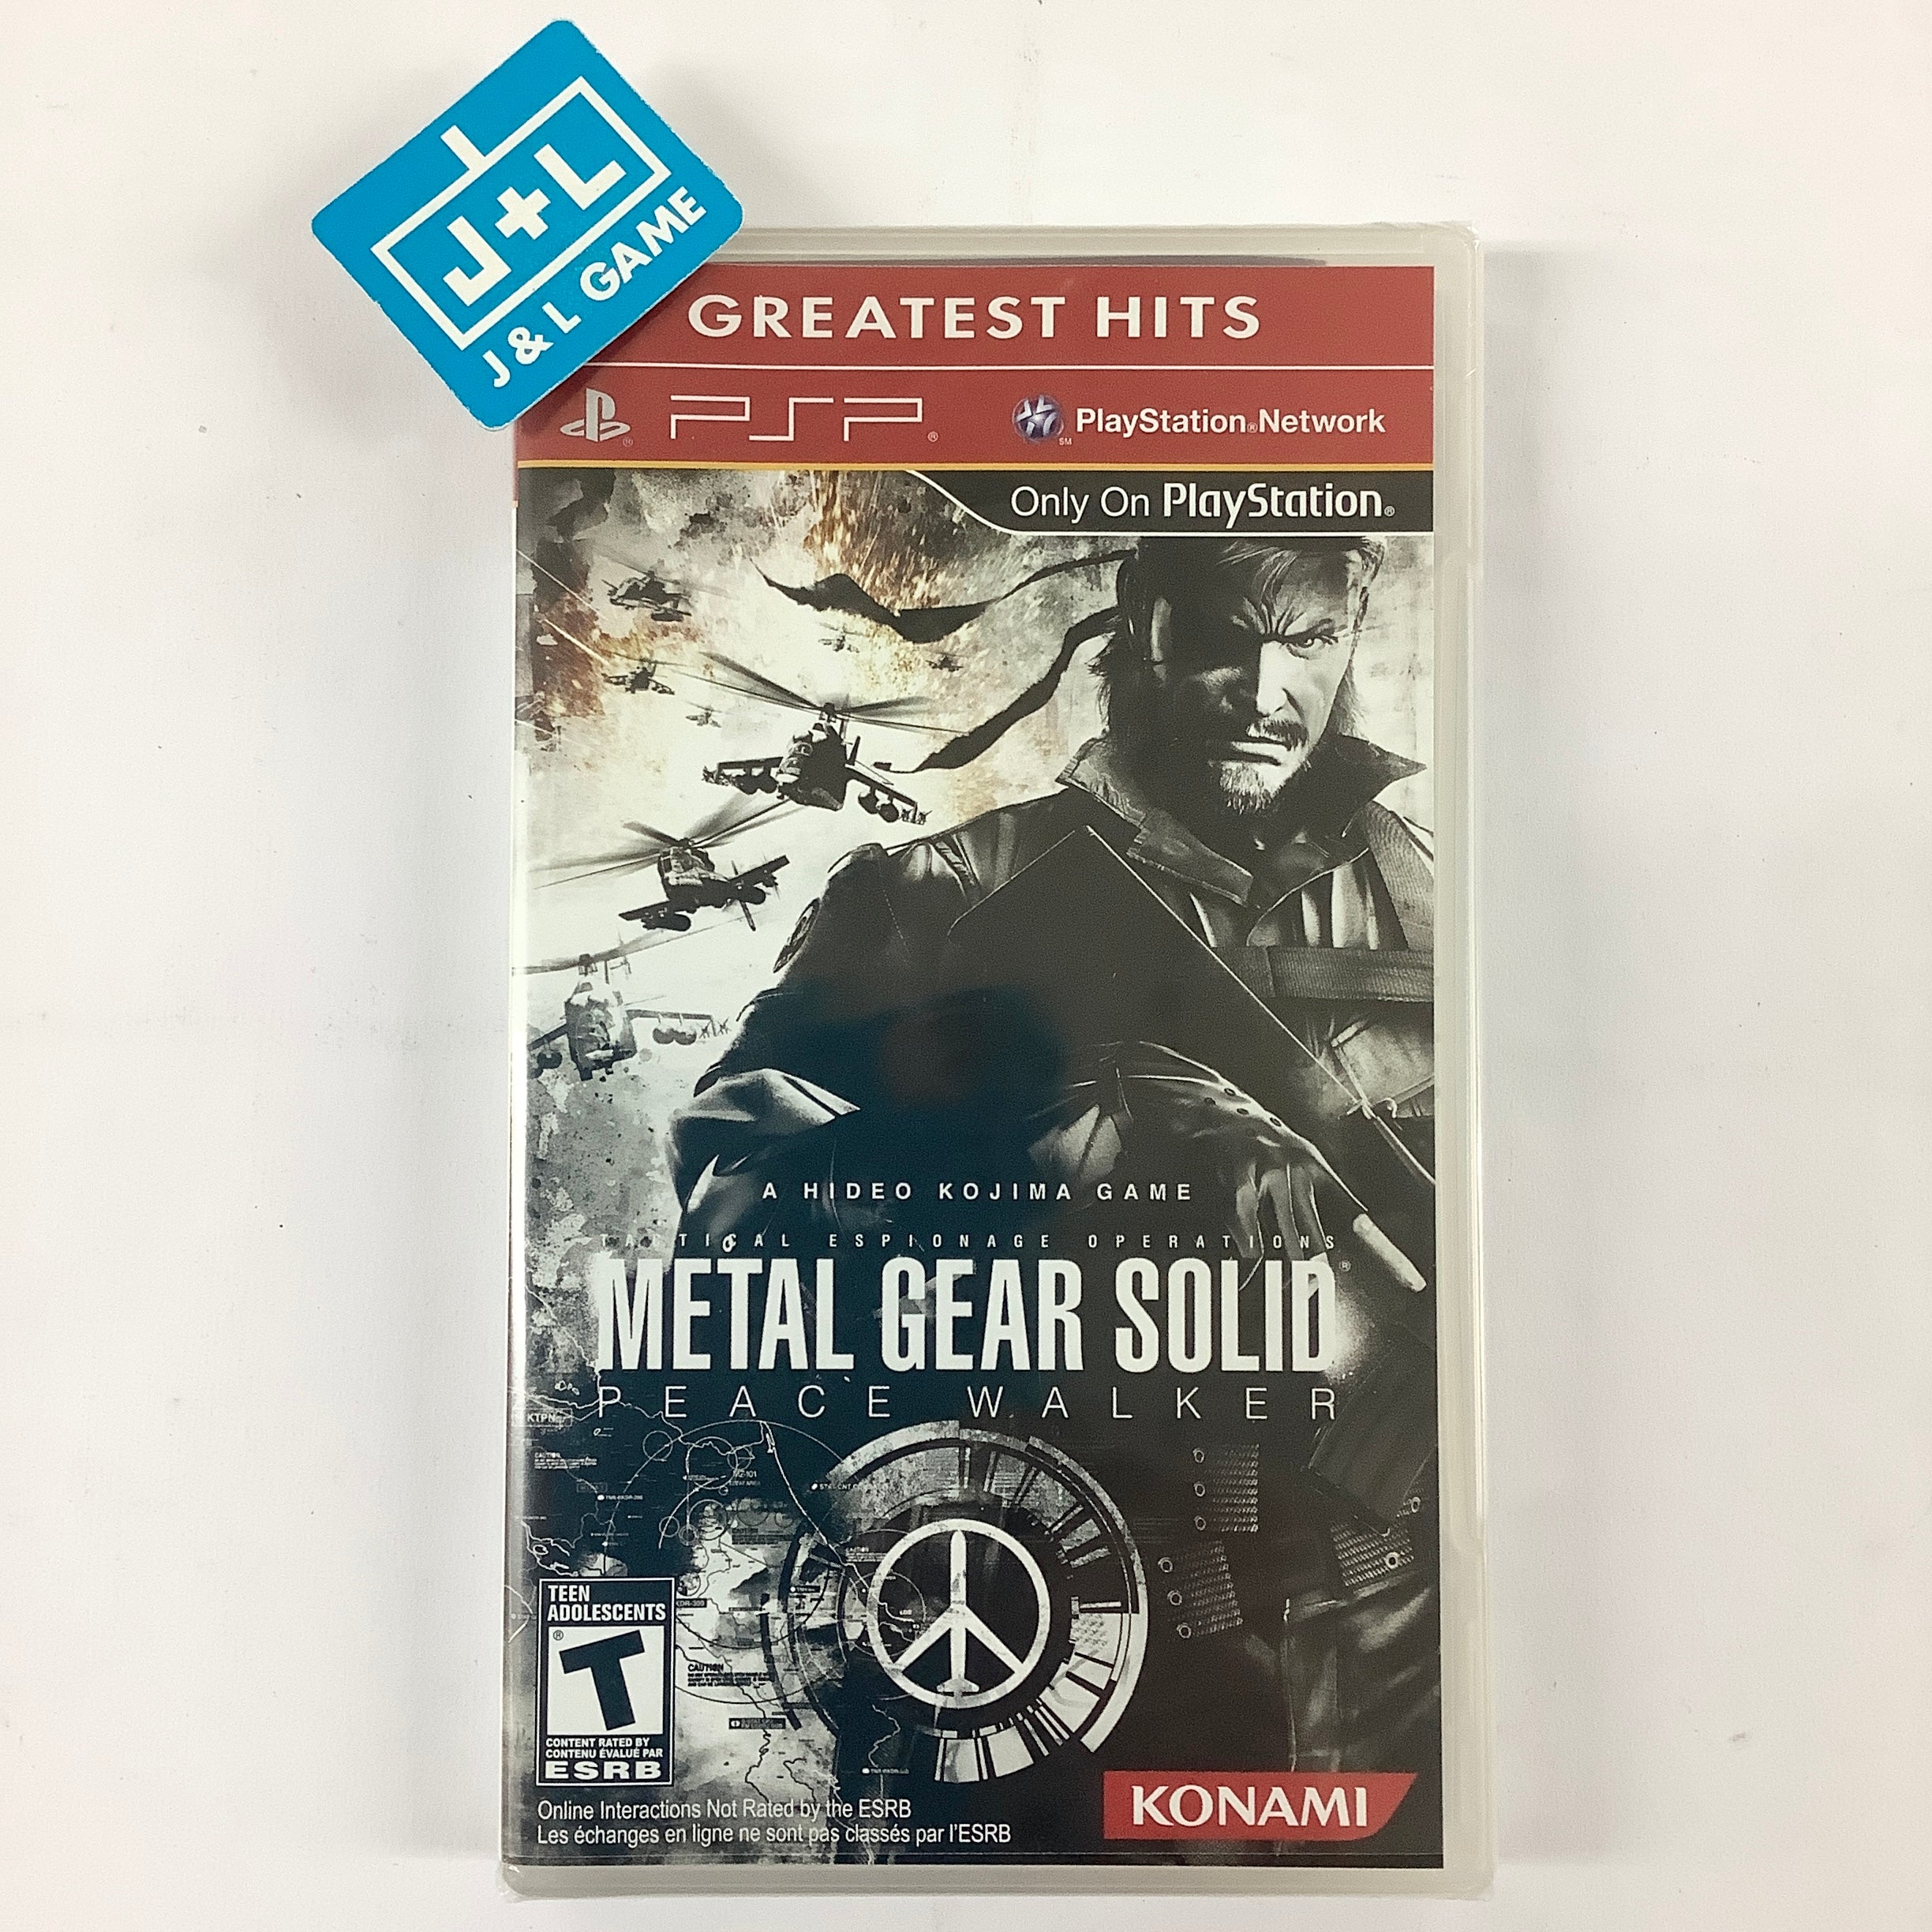 Metal Gear Solid: Peace Walker (Greatest Hits) - SONY PSP Video Games Konami   